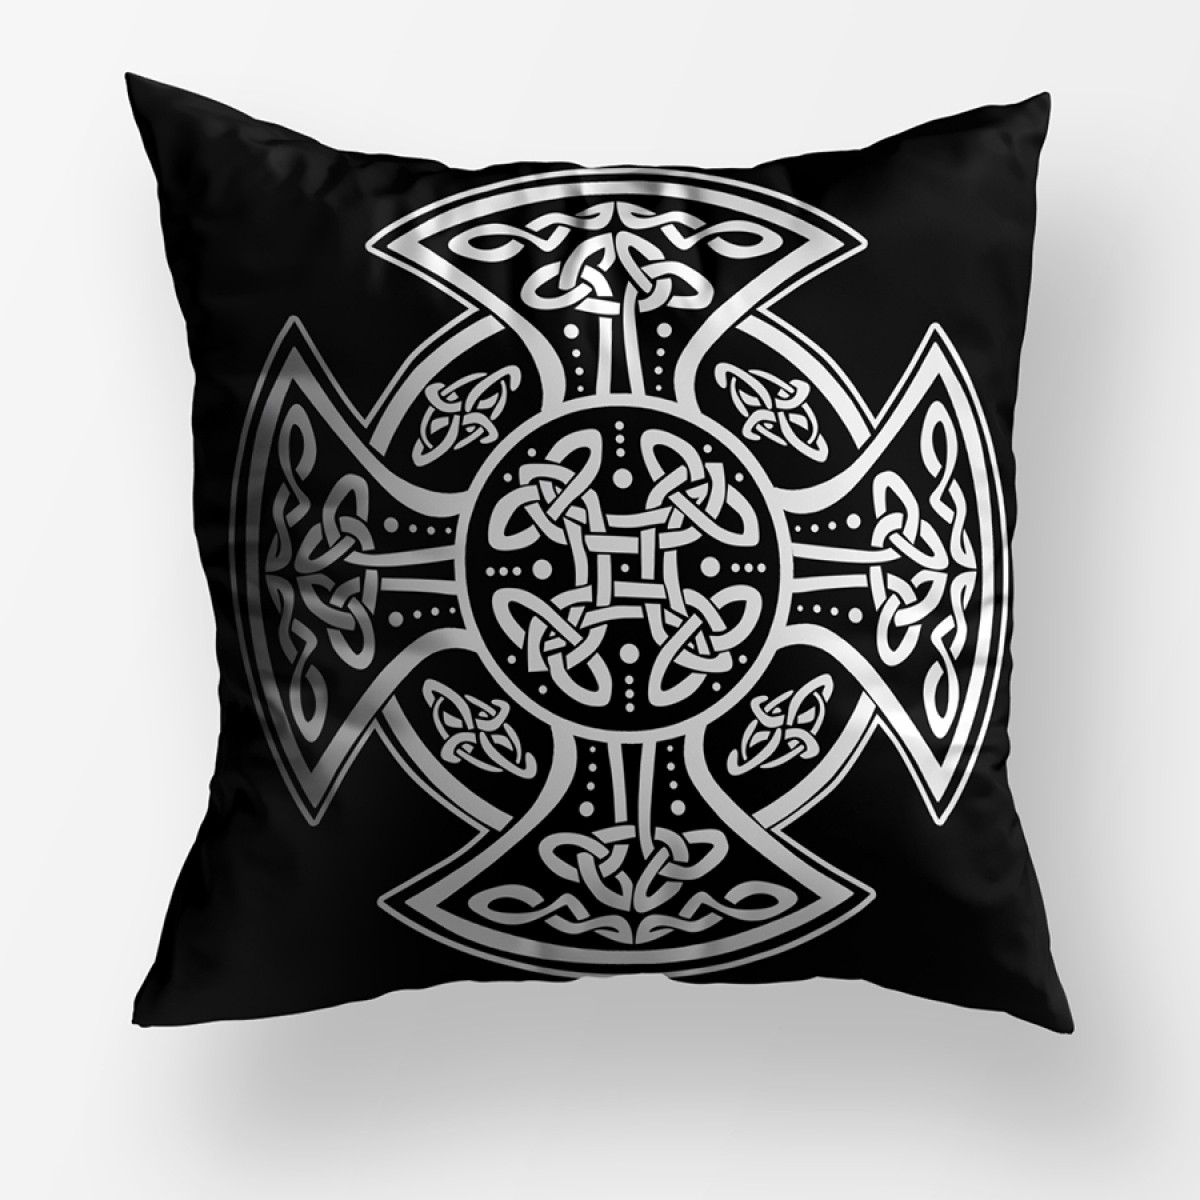 Celt Sembolü Dekoratif Kare Yastık